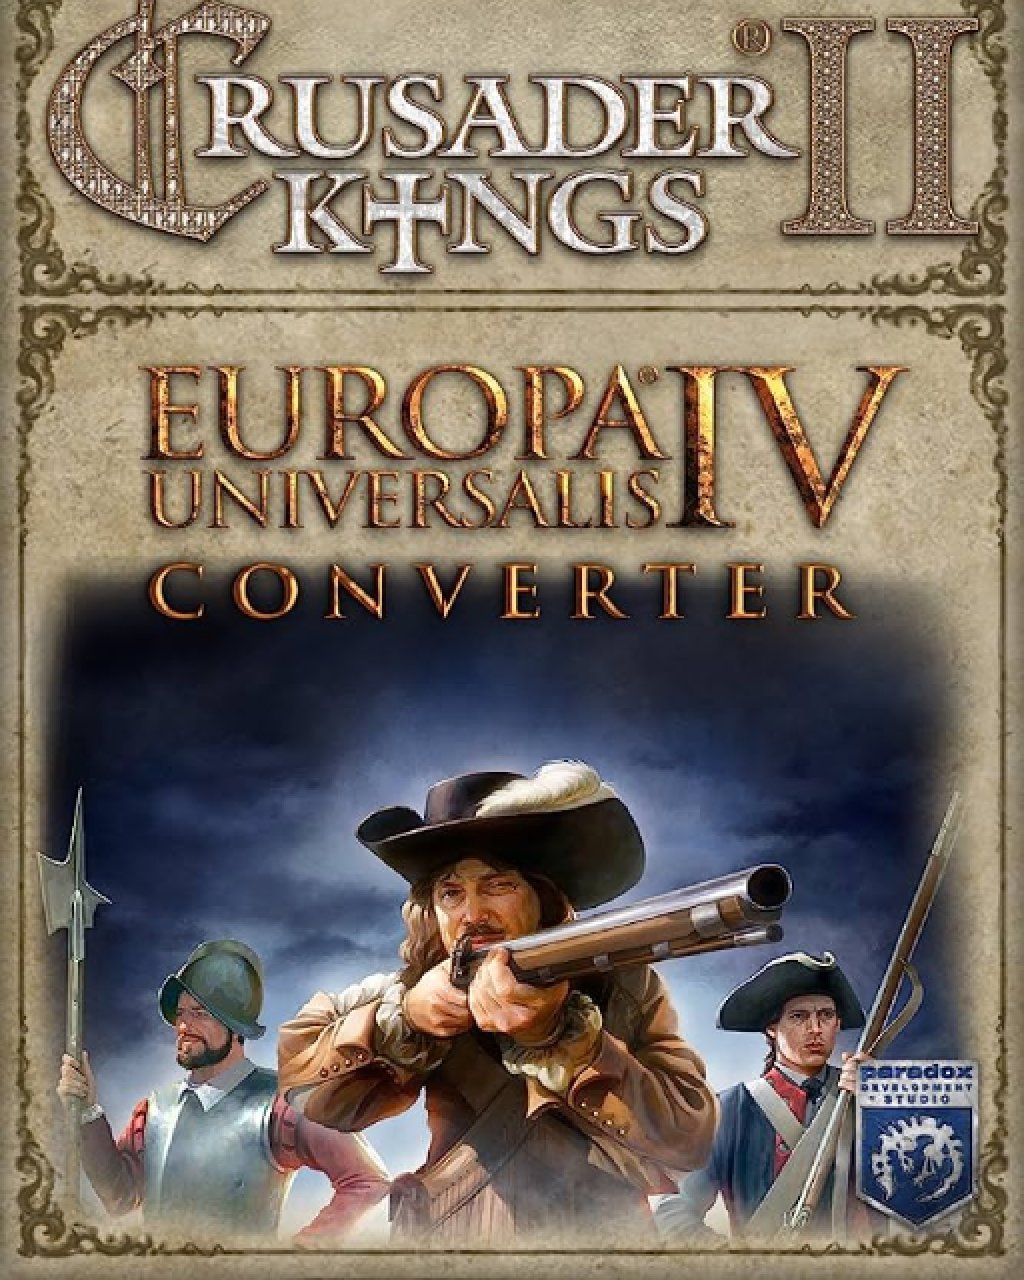 Crusader Kings II Europa Universalis IV Converter